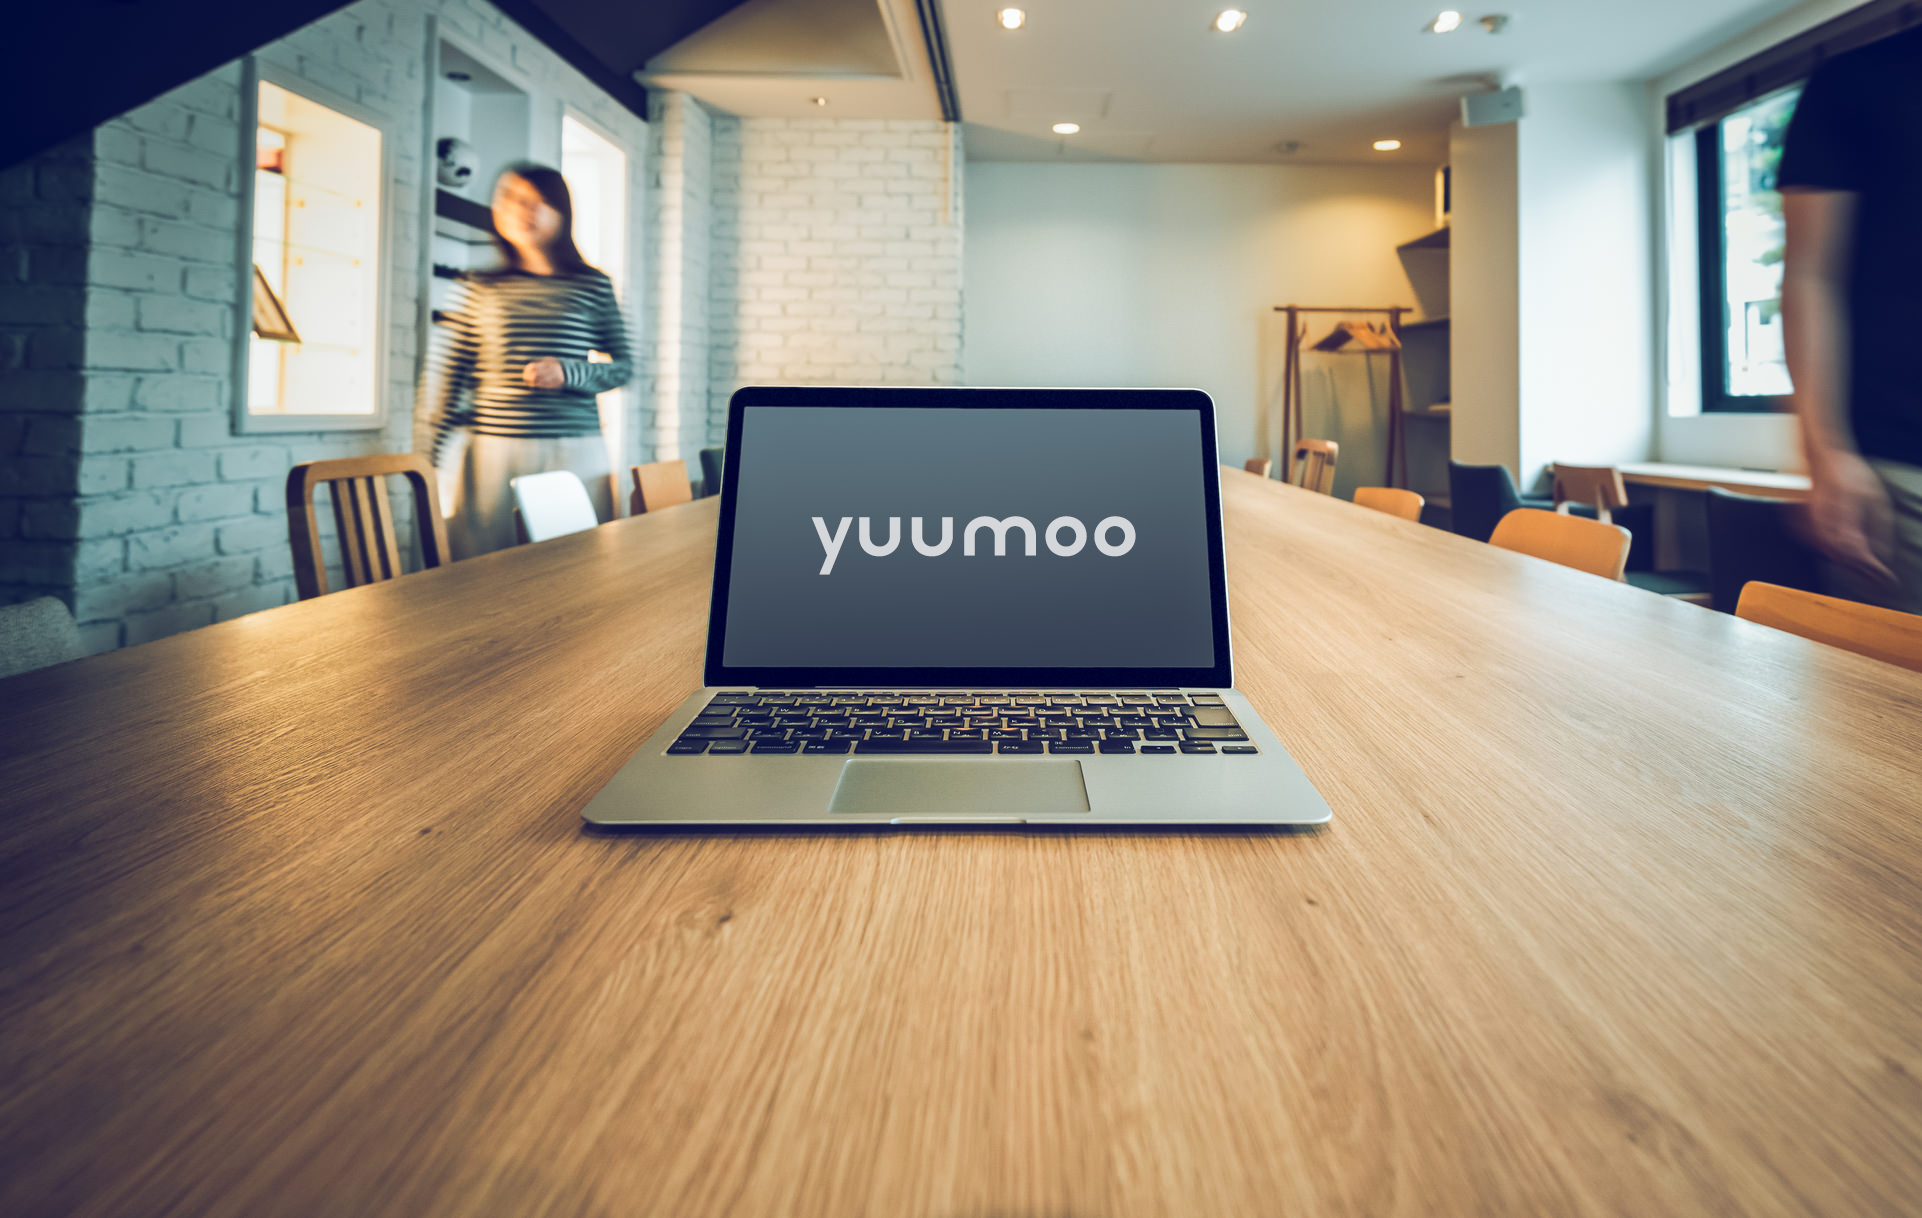 株式会社ユーモーは東京都調布市にあるWeb制作会社です。